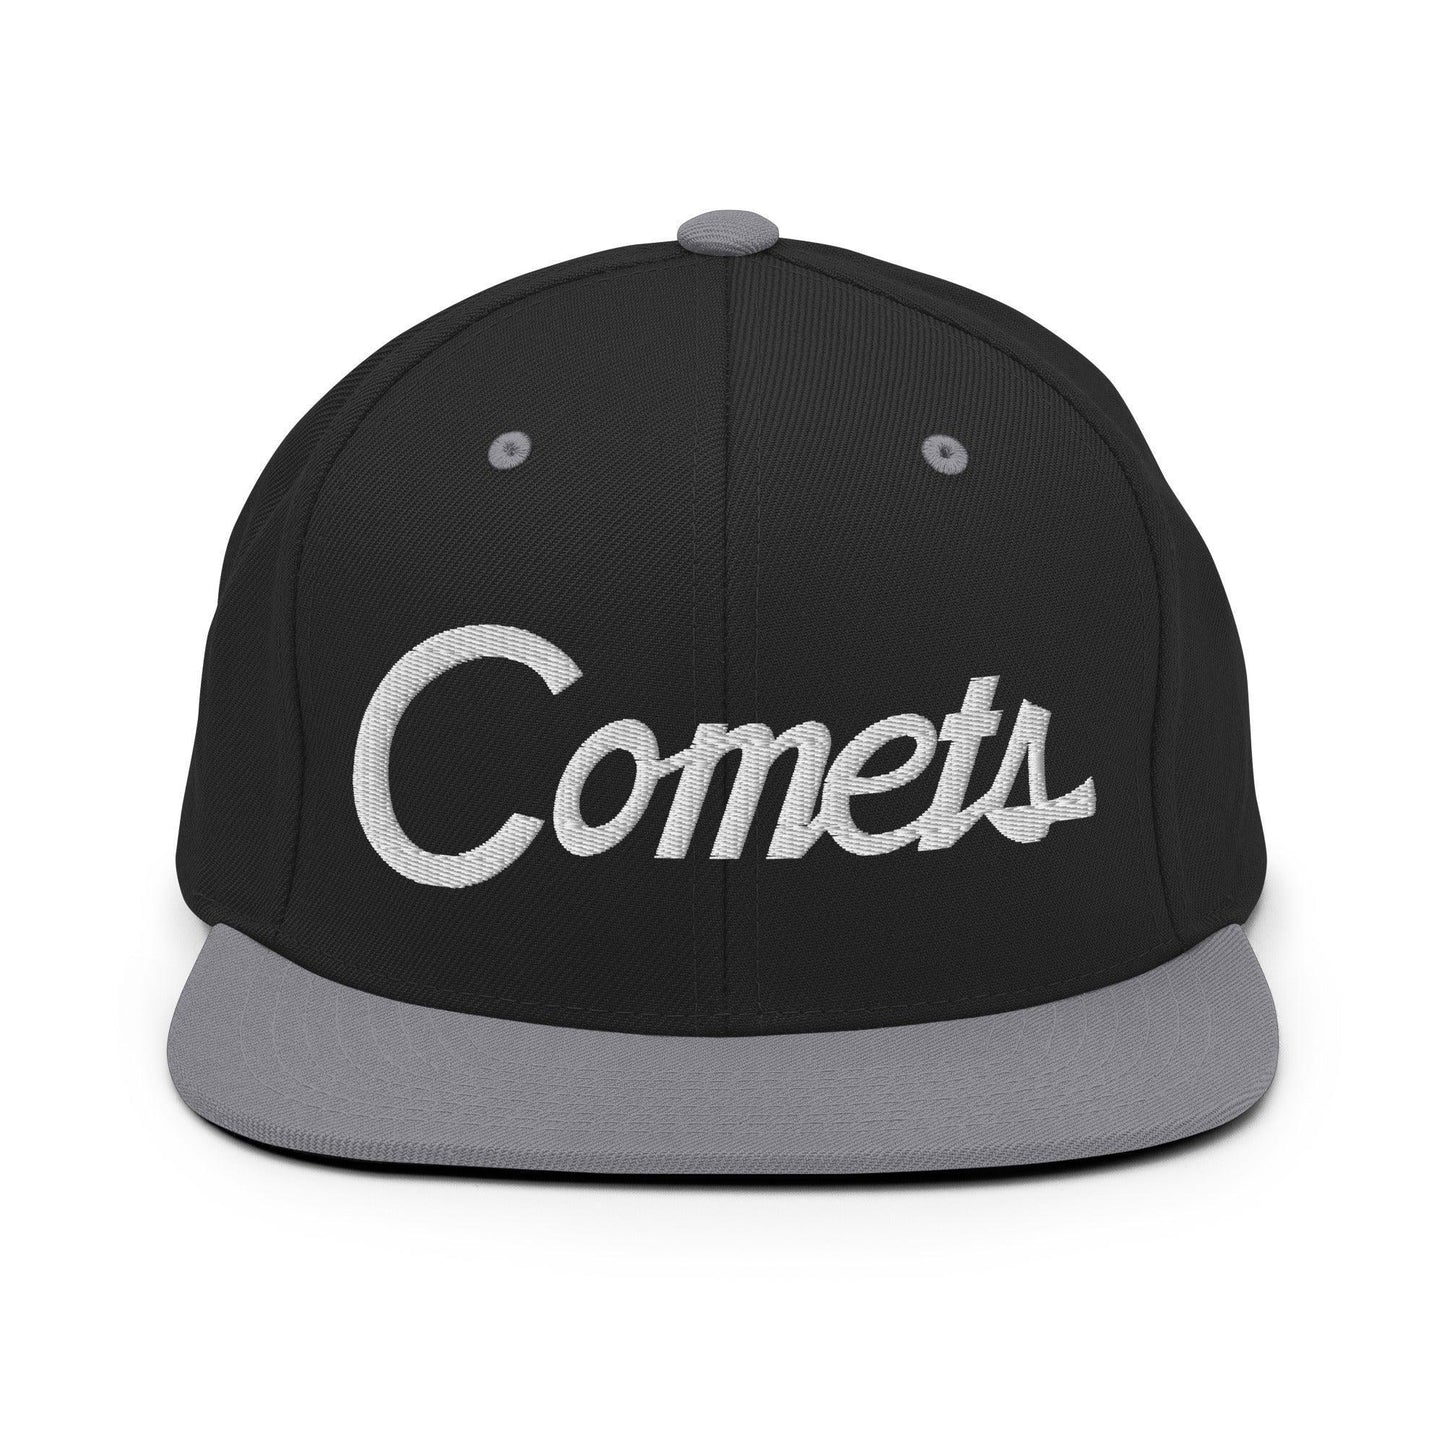 Comets School Mascot Script Snapback Hat Black/ Silver